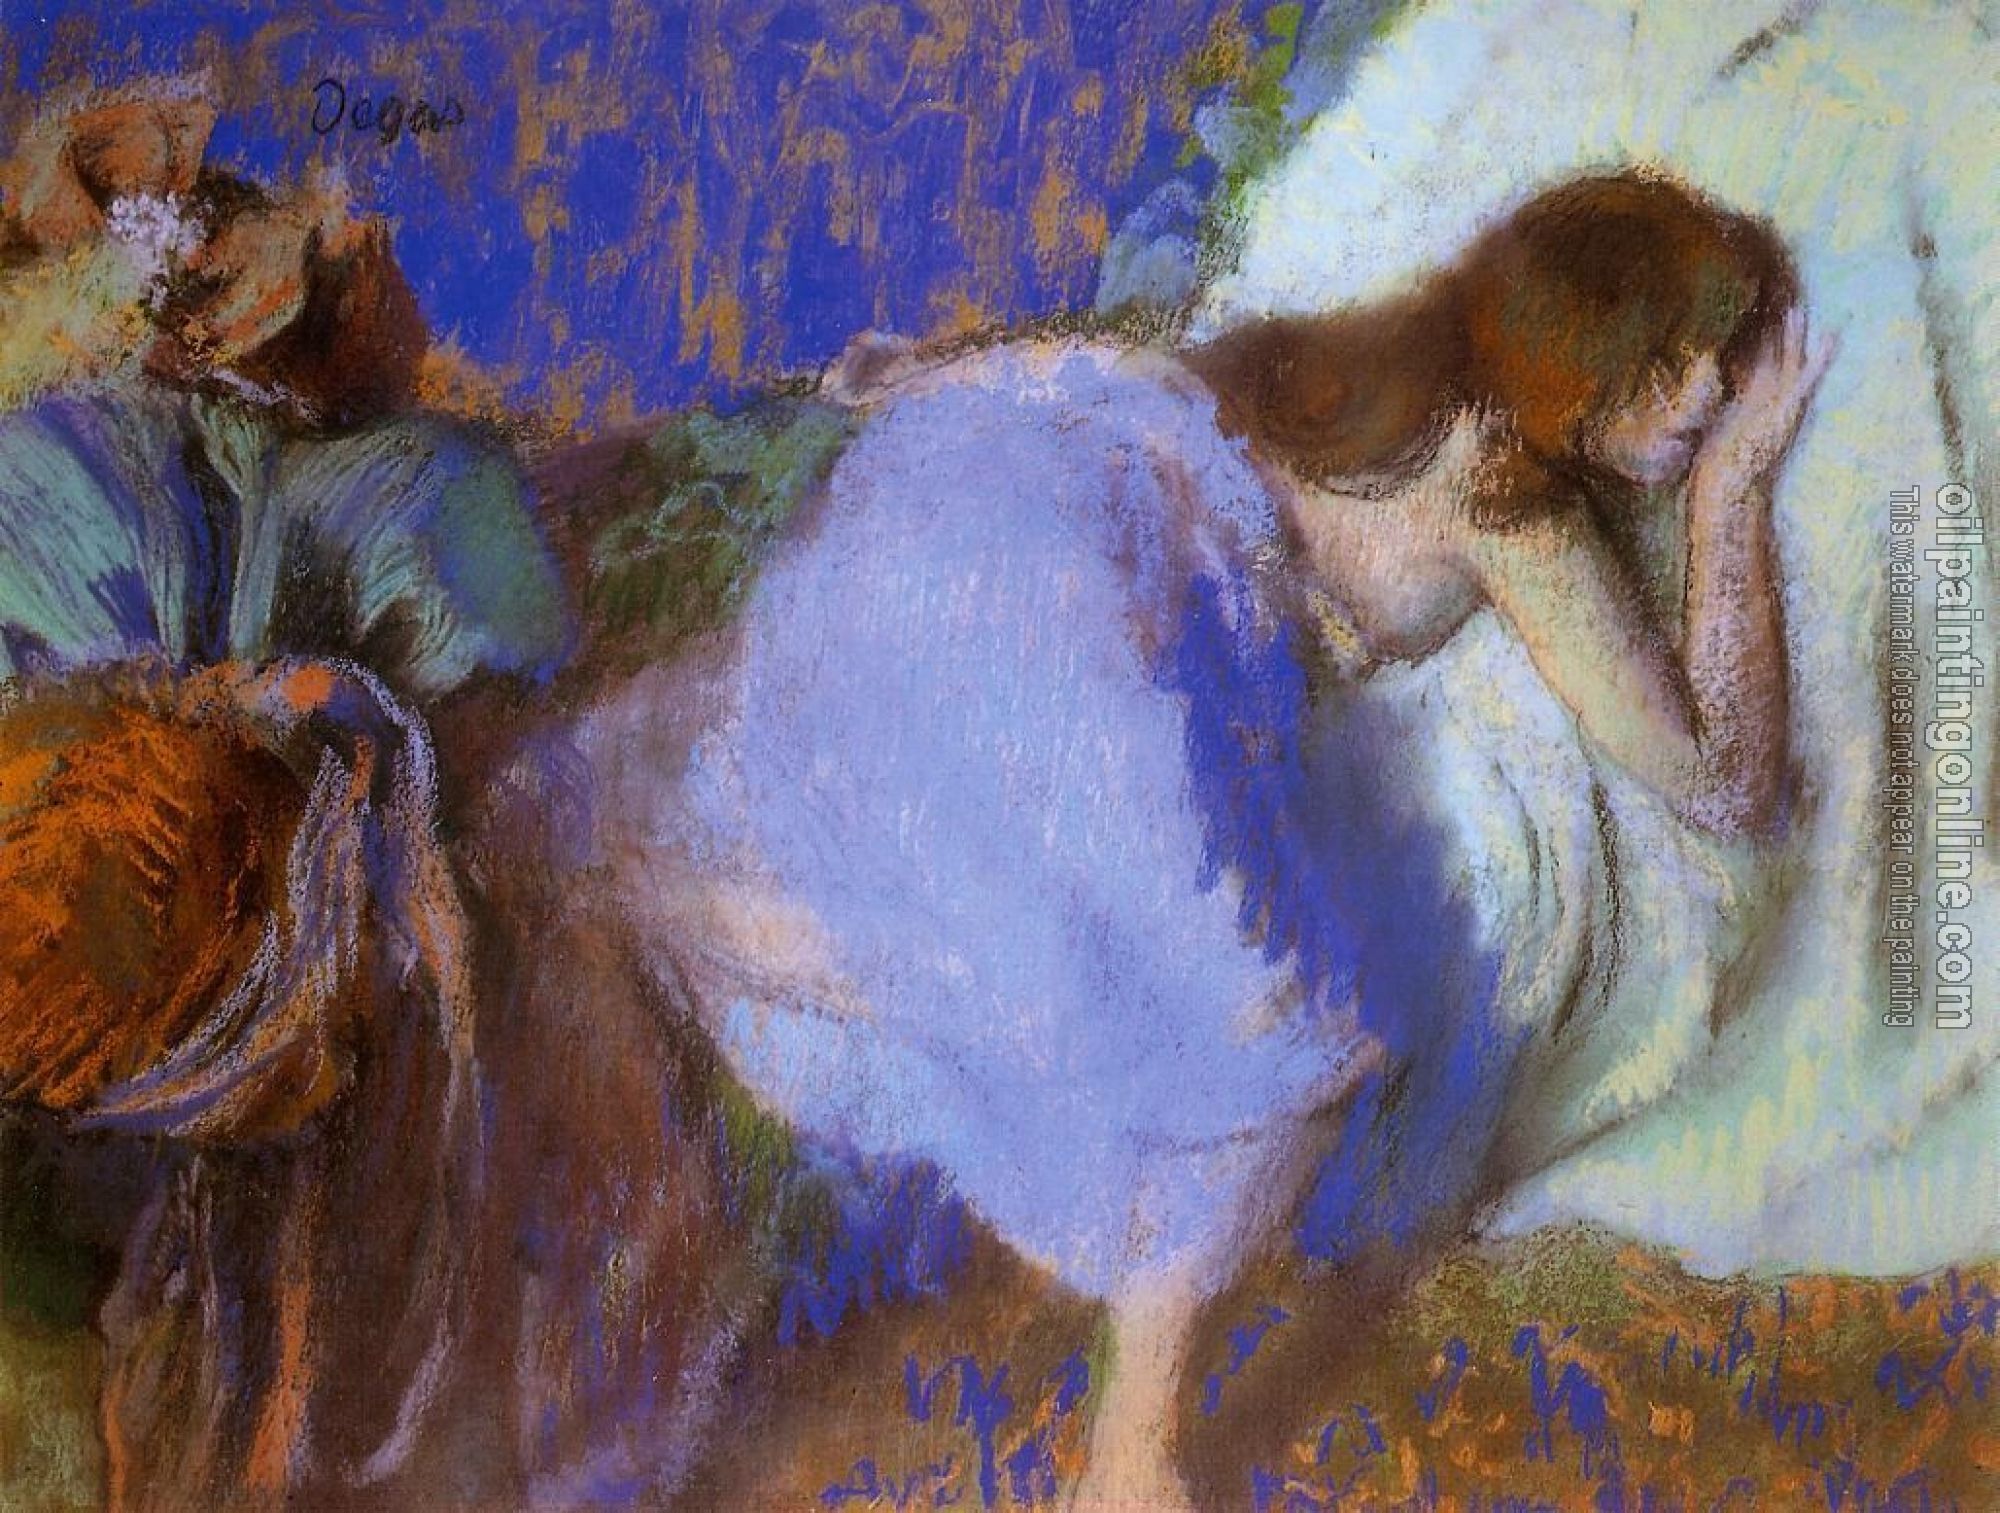 Degas, Edgar - Rest